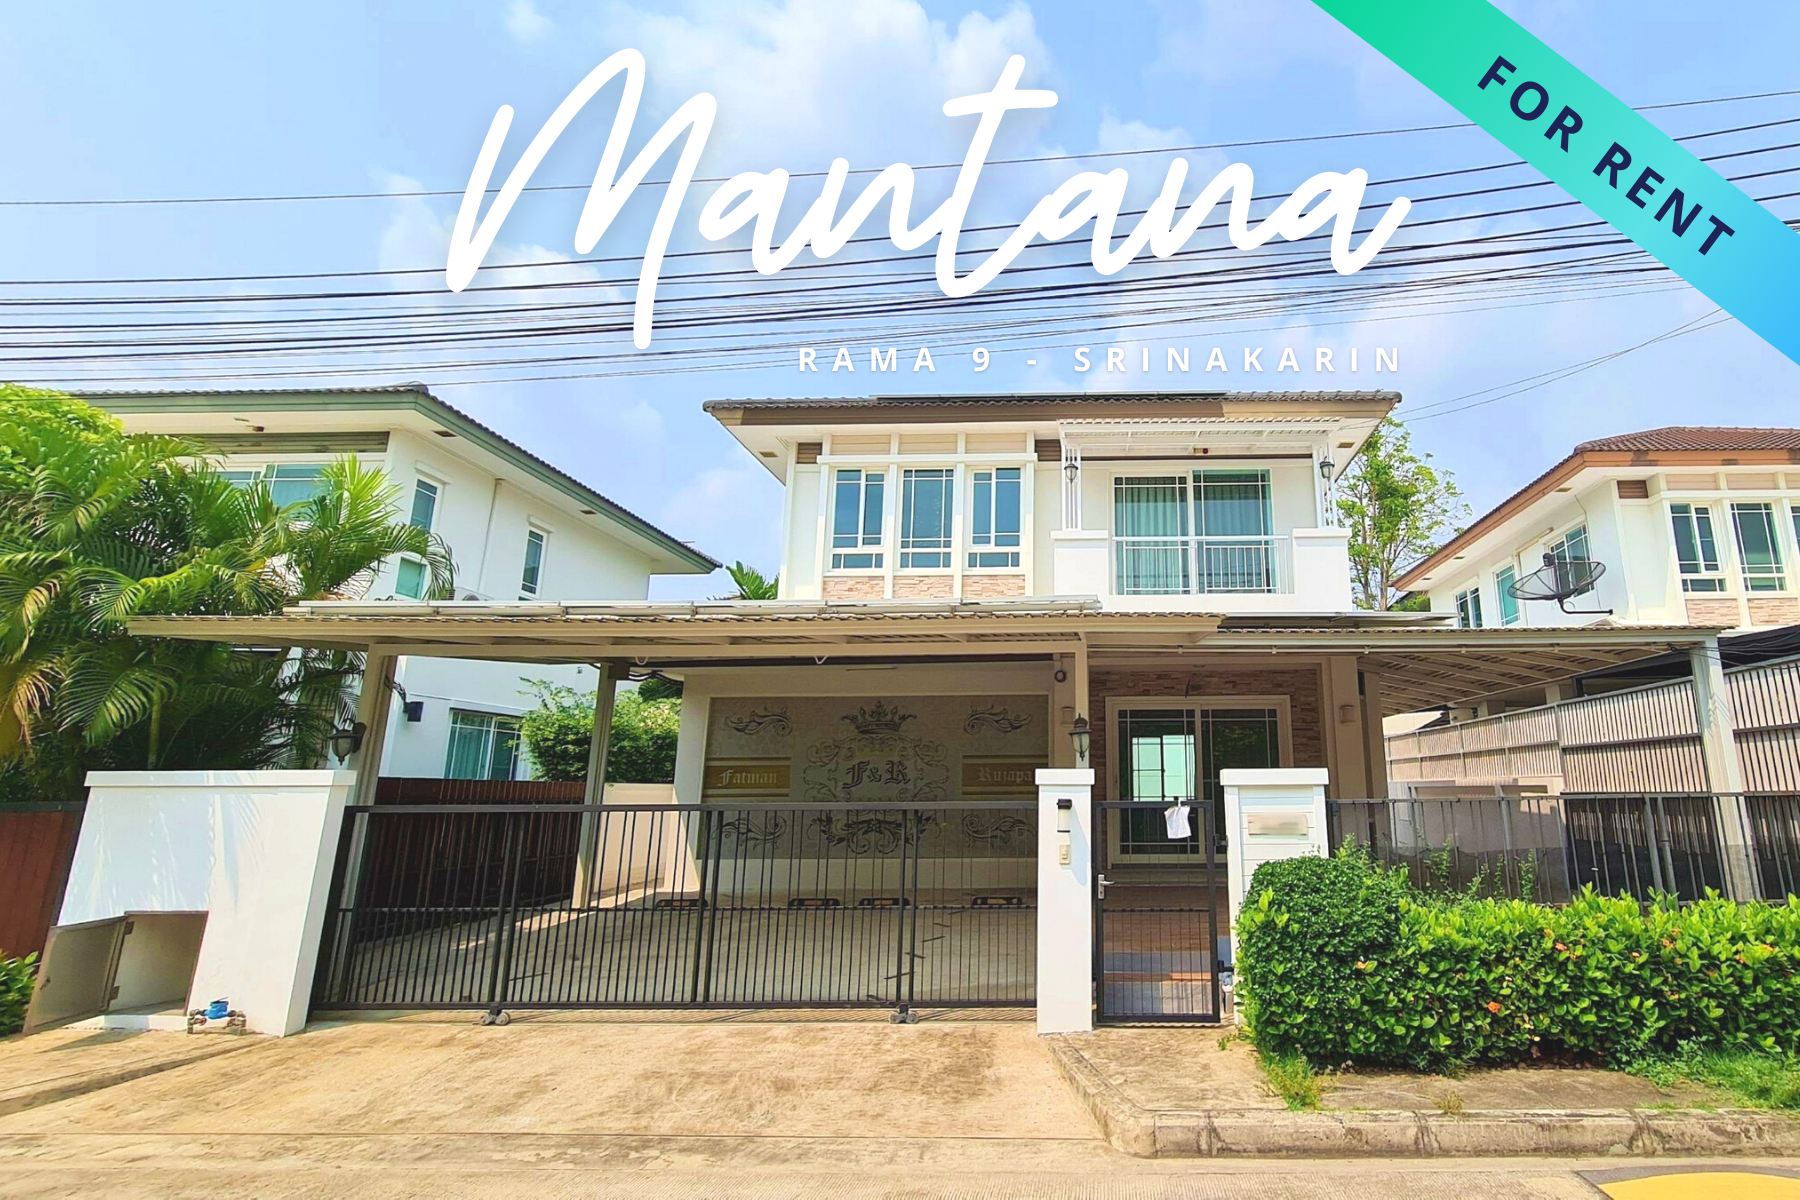 ให้เช่าบ้านเดี่ยว โครงการมัณฑนา พระราม 9 – ศรีนครินทร์ House For Rent Mantana Rama 9 – Srinakarin